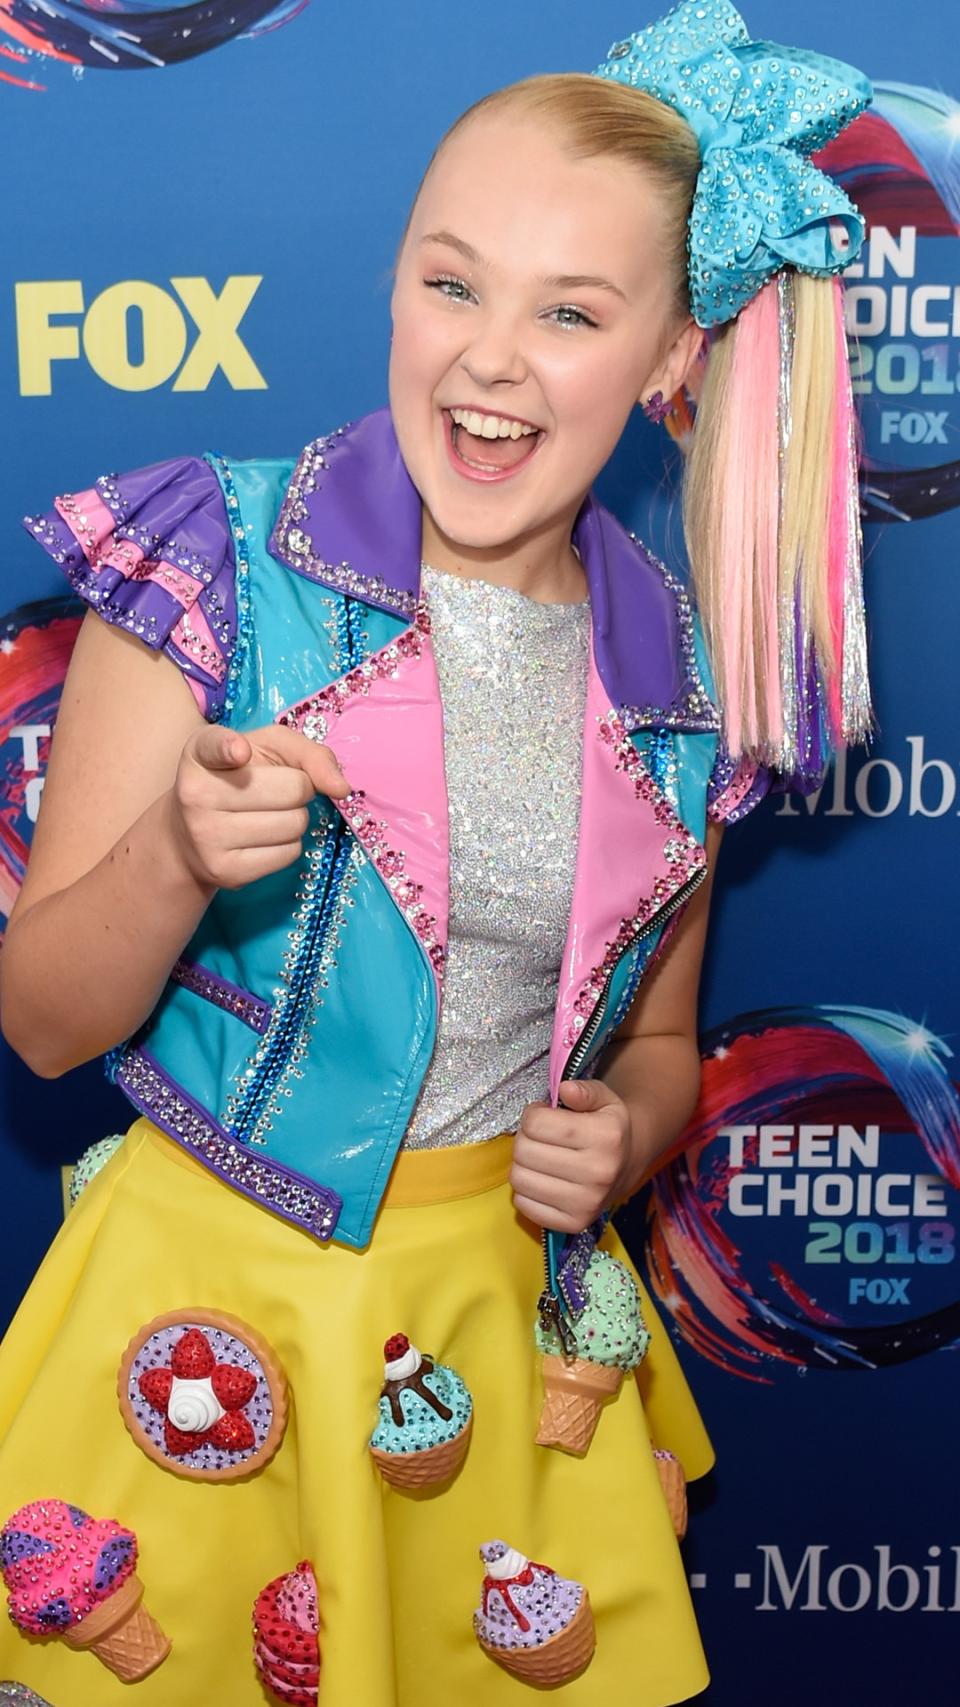 August 2018: Teen Choice Awards